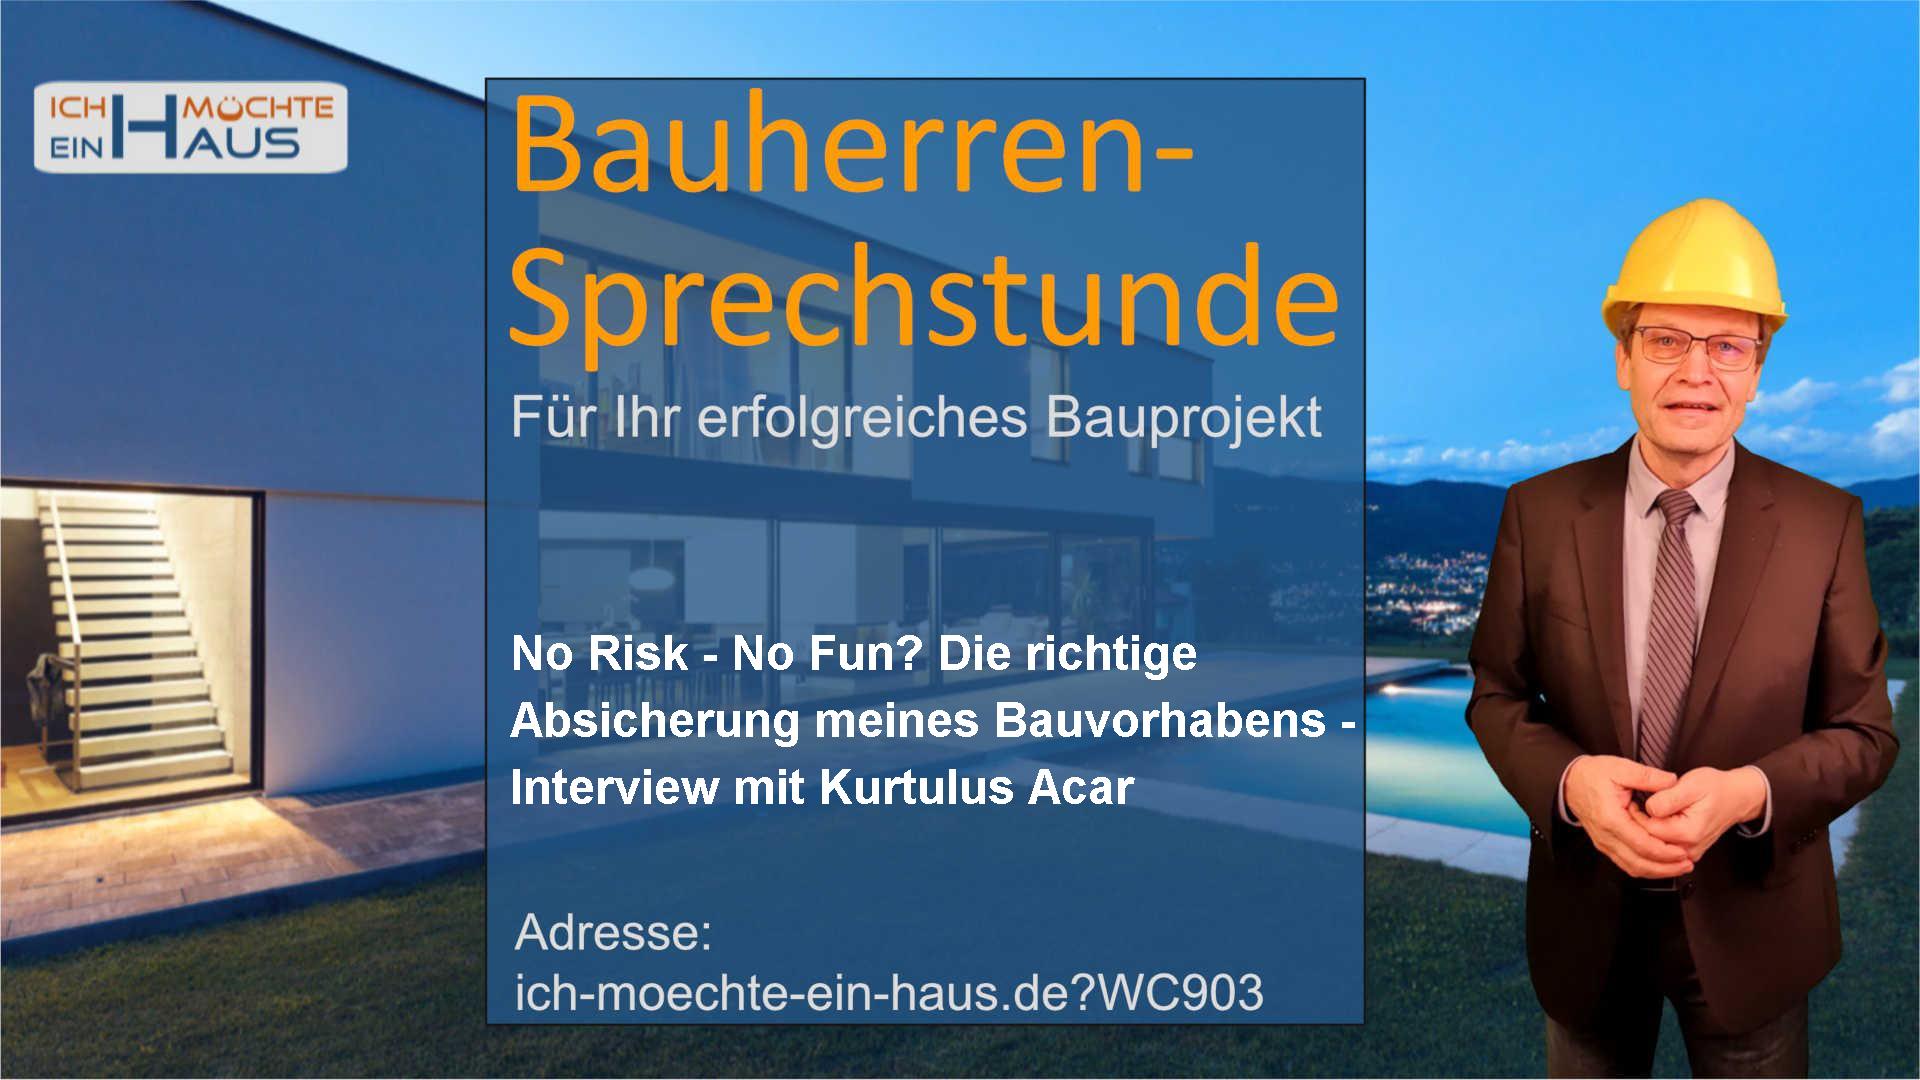 No Risk - No Fun? Die richtige Absicherung meines Bauvorhabens - Interview mit Kurtulus Acar